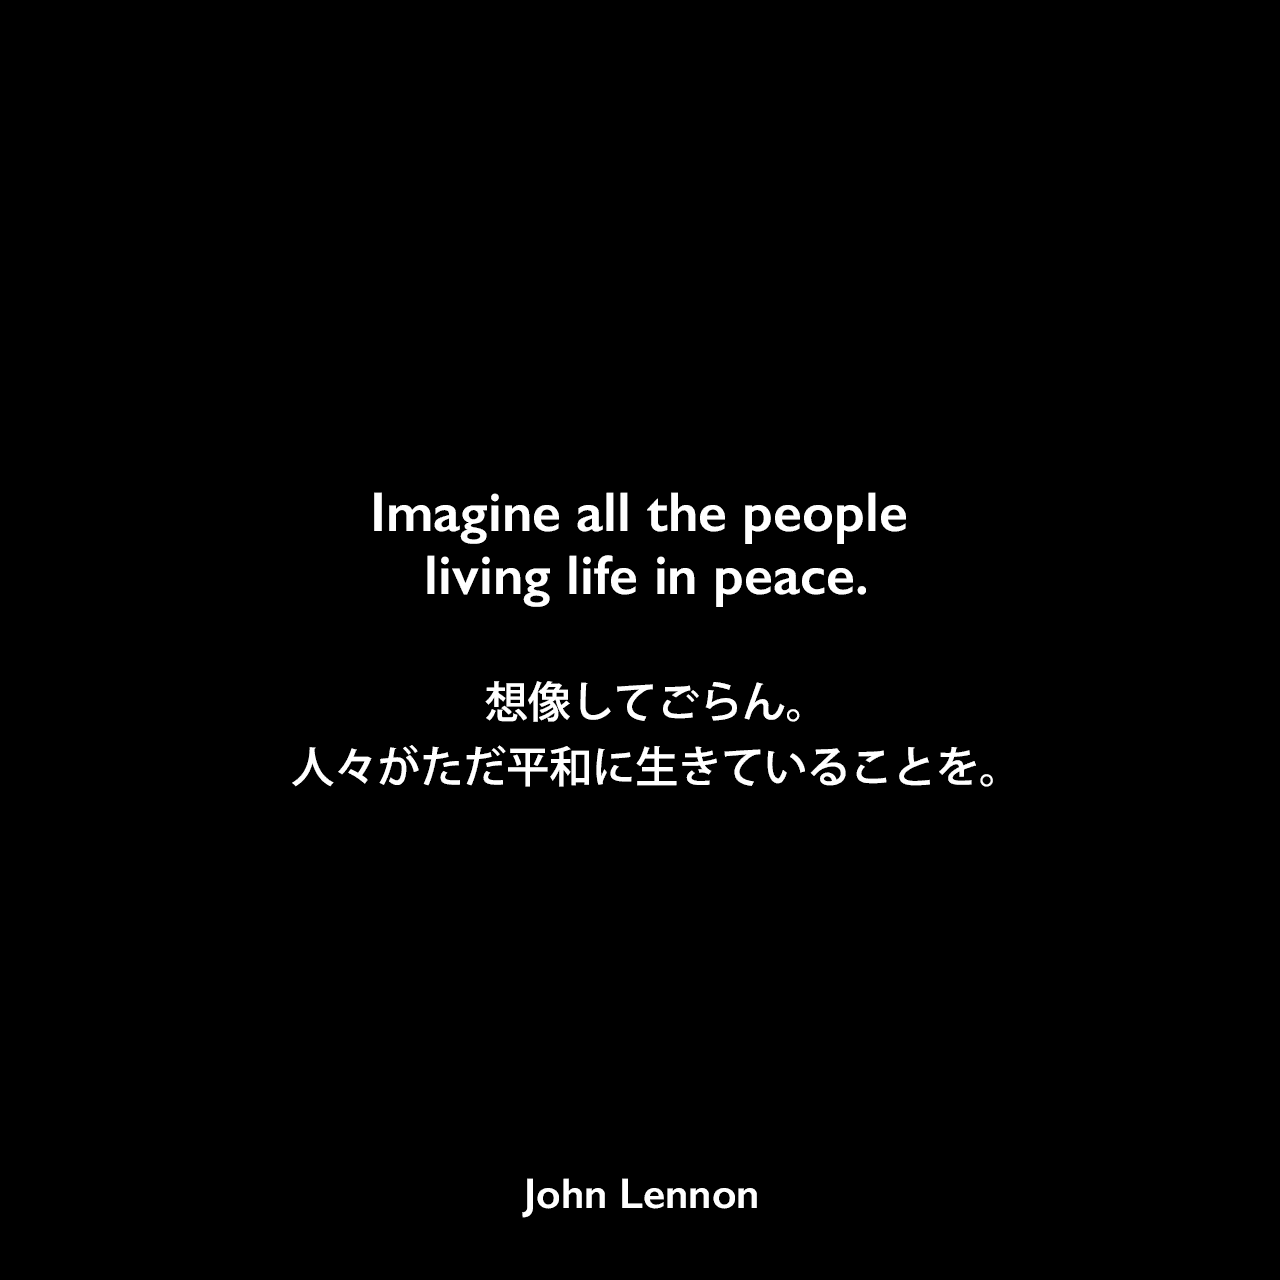 Imagine all the people living life in peace.想像してごらん。人々がただ平和に生きていることを。- ジョン・レノン作詞・作曲の「Imagine」よりJohn Lennon